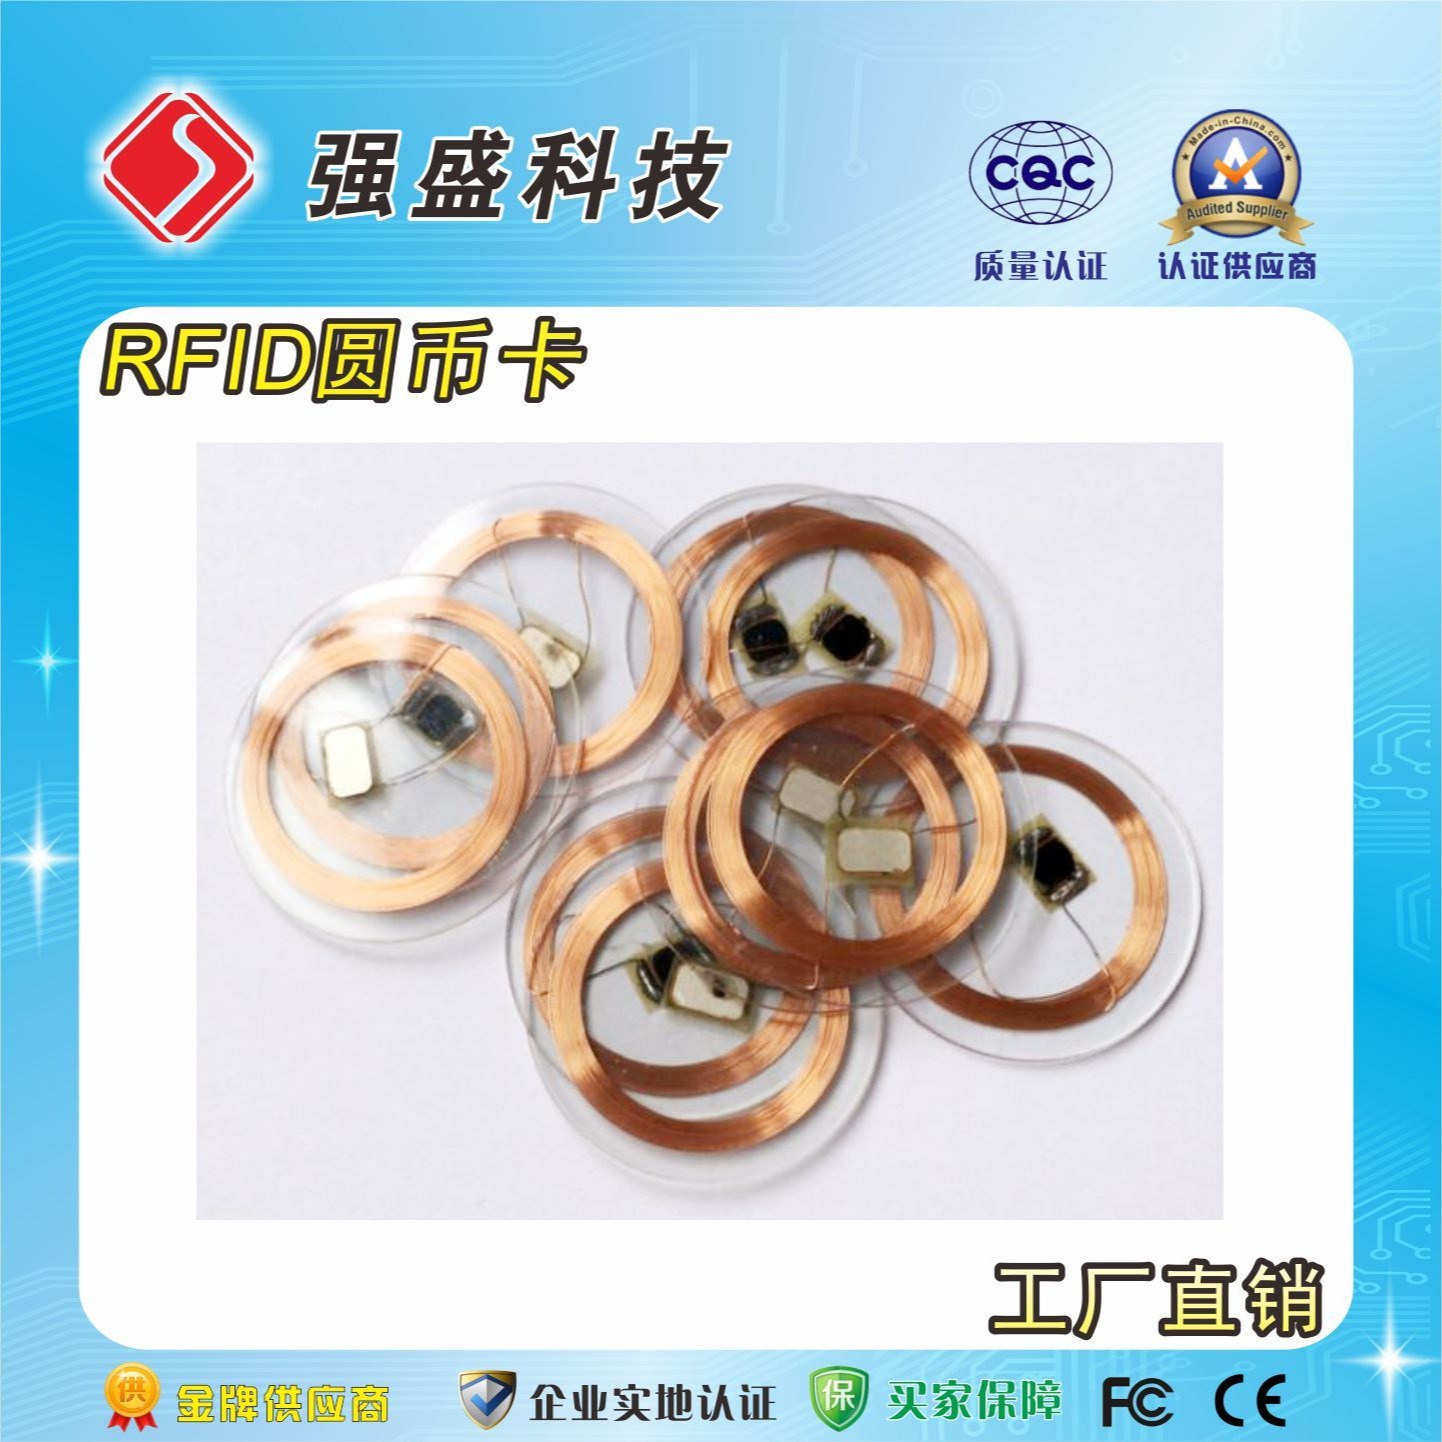 广州定制IC印章标签 公章植入式防伪芯片 RFID智能印章图片